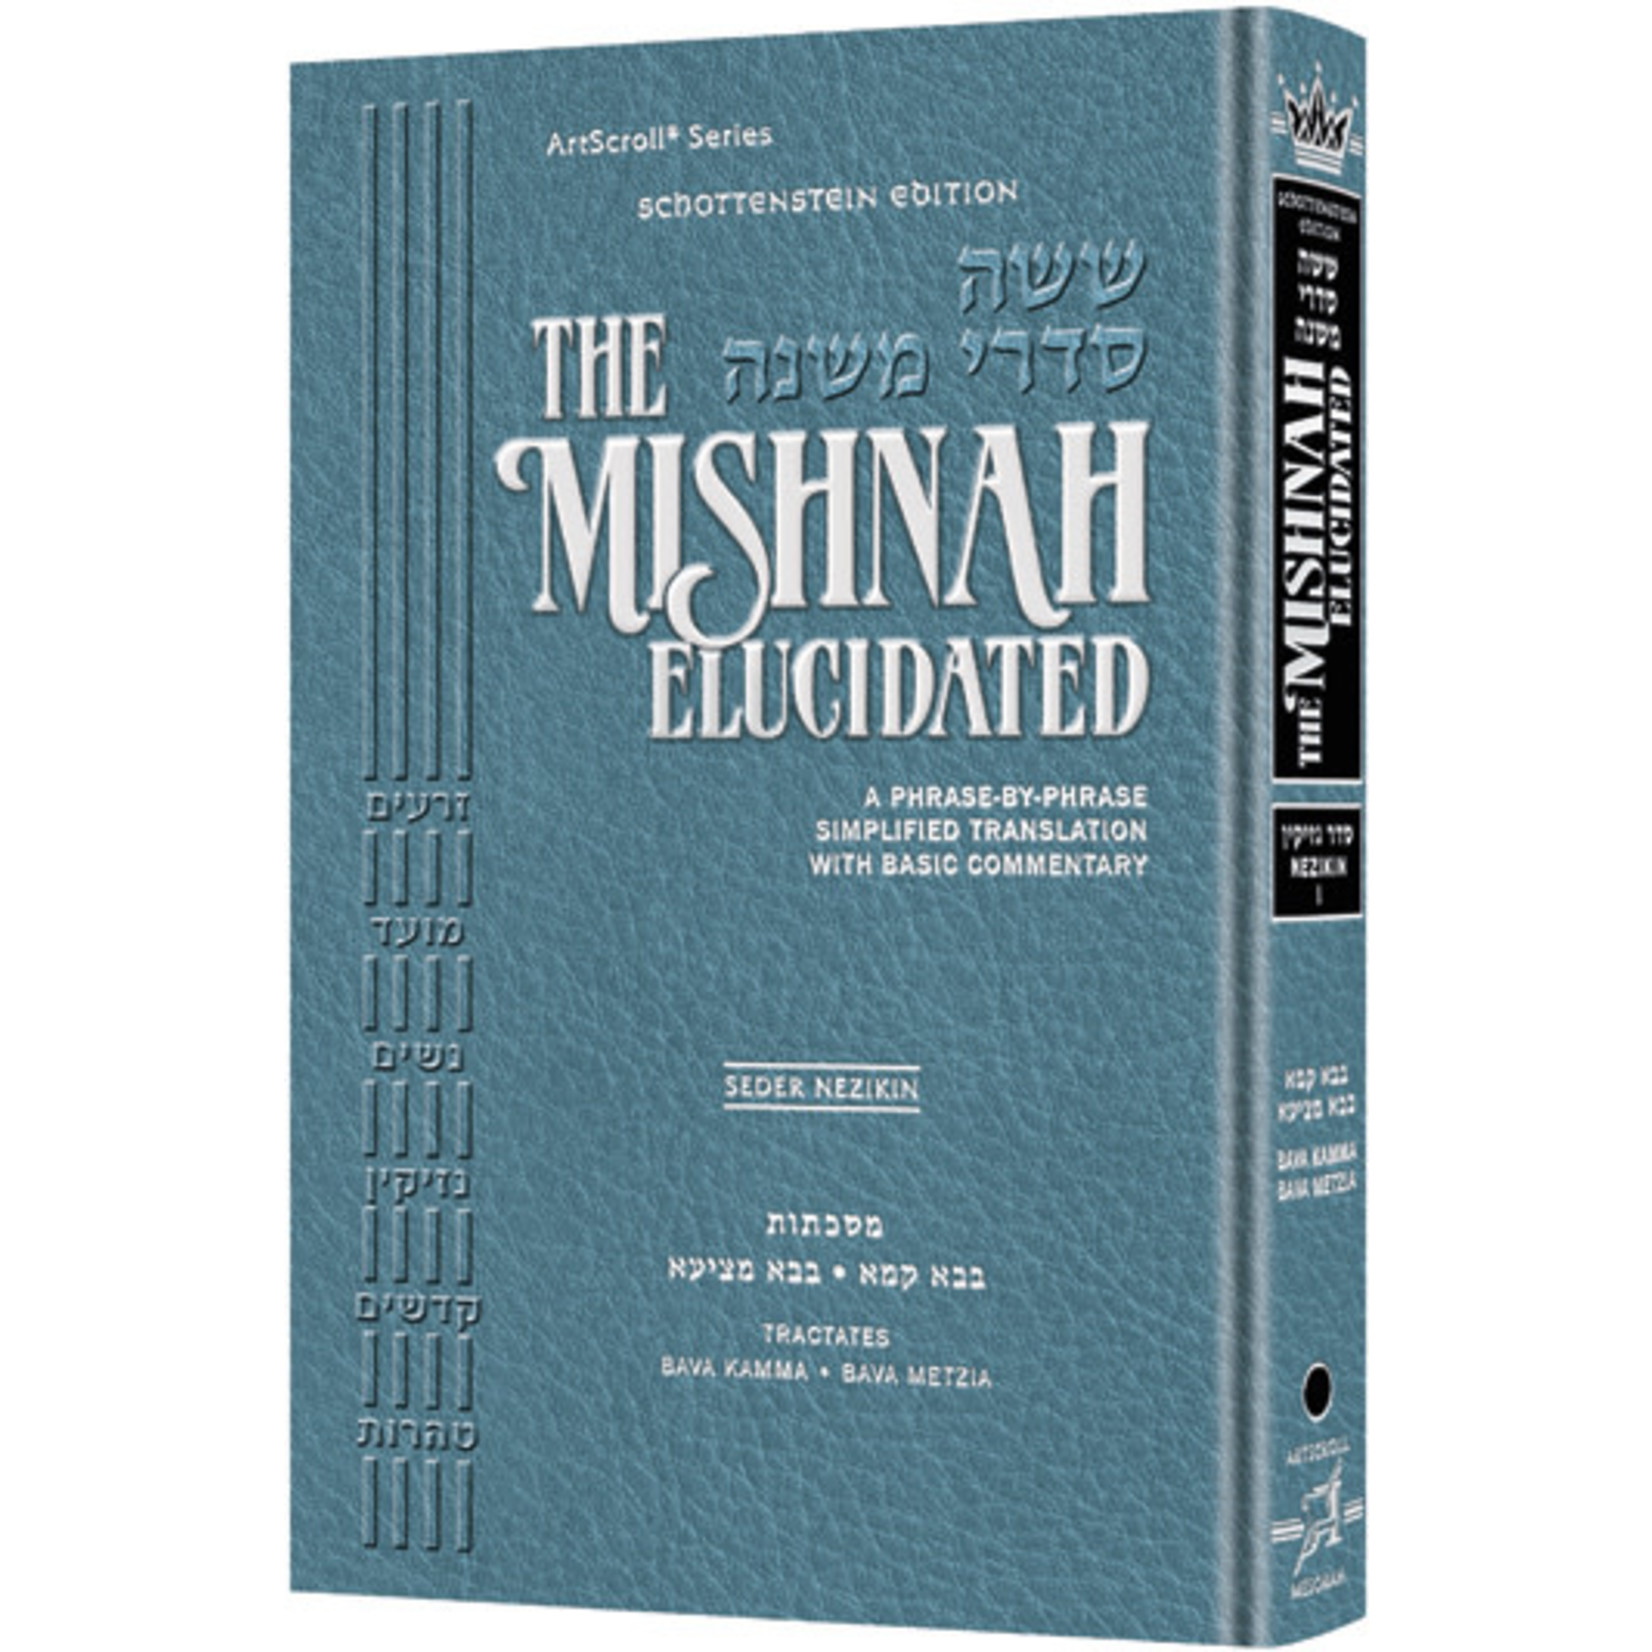 Nezikin Vol. 1 - ArtScroll Schottenstein Edition Hebrew/English Elucidated Mishnah, Full Size